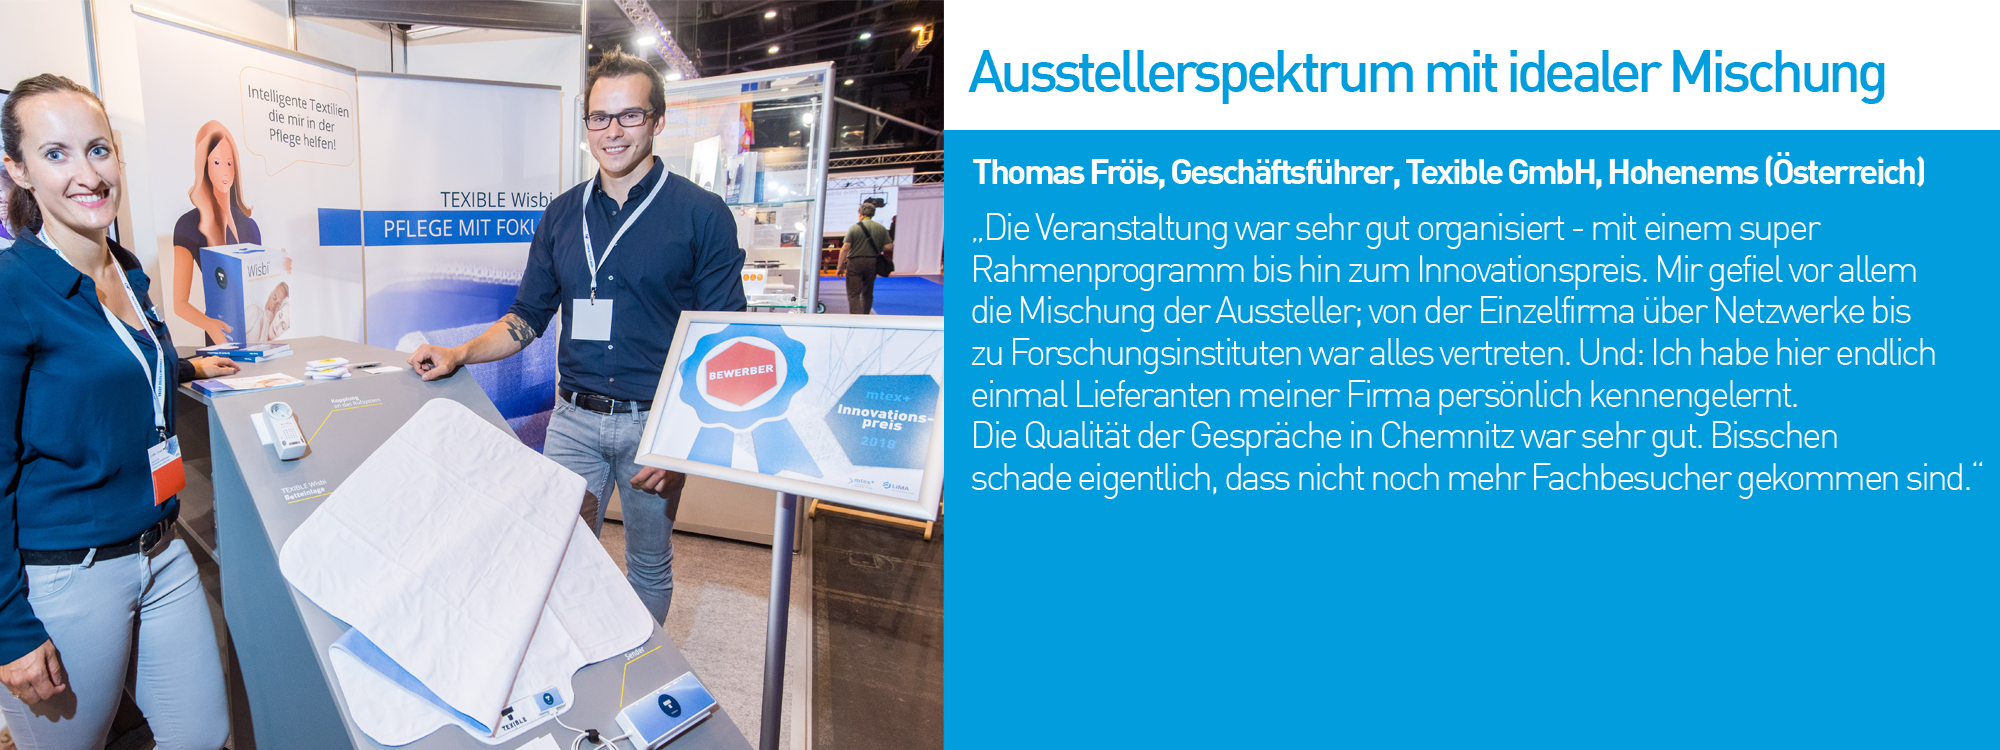 Thomas Fröis, Geschäftsführer, Texible GmbH, Hohenems (Österreich)